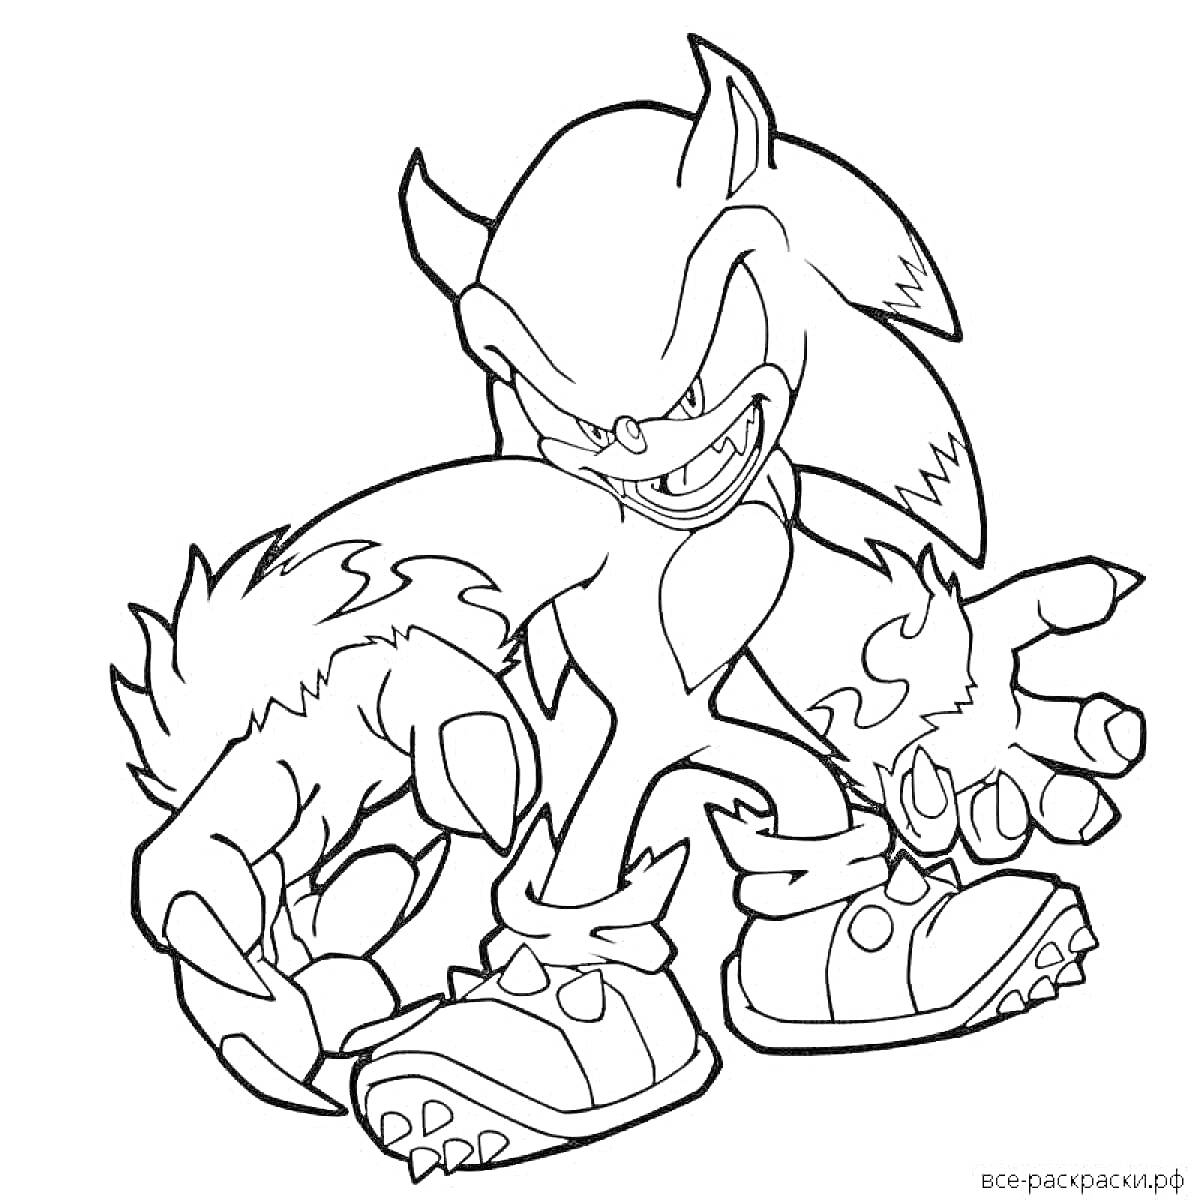 Раскраска Ежик с агрессивным выражением лица и когтями, персонаж мультфильма 